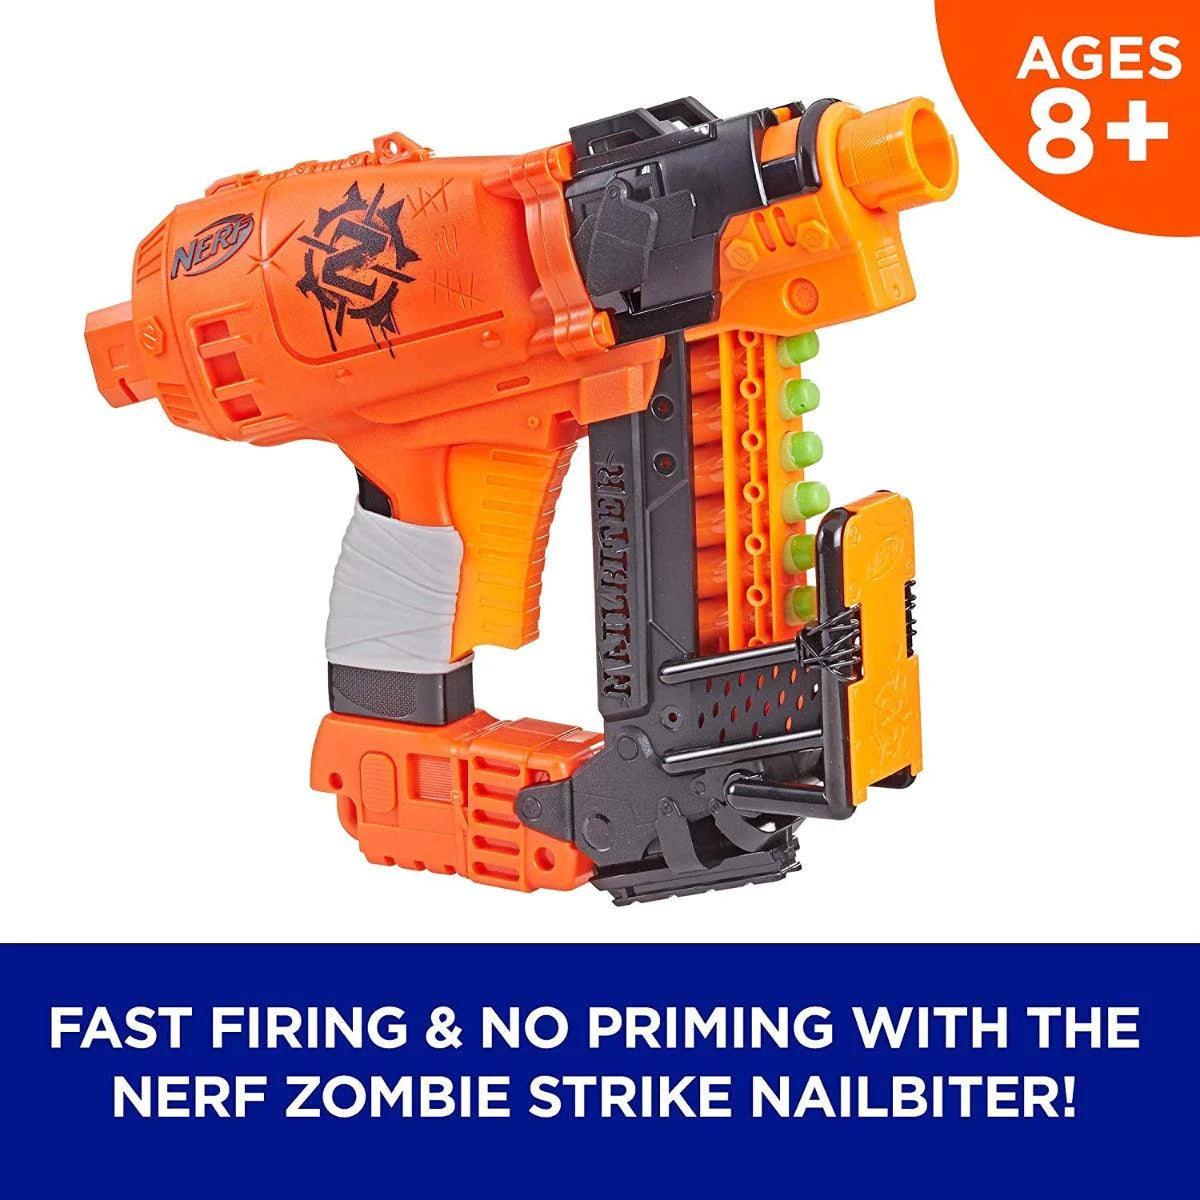 NERF Nailbiter Zombie Strike Toy Blaster